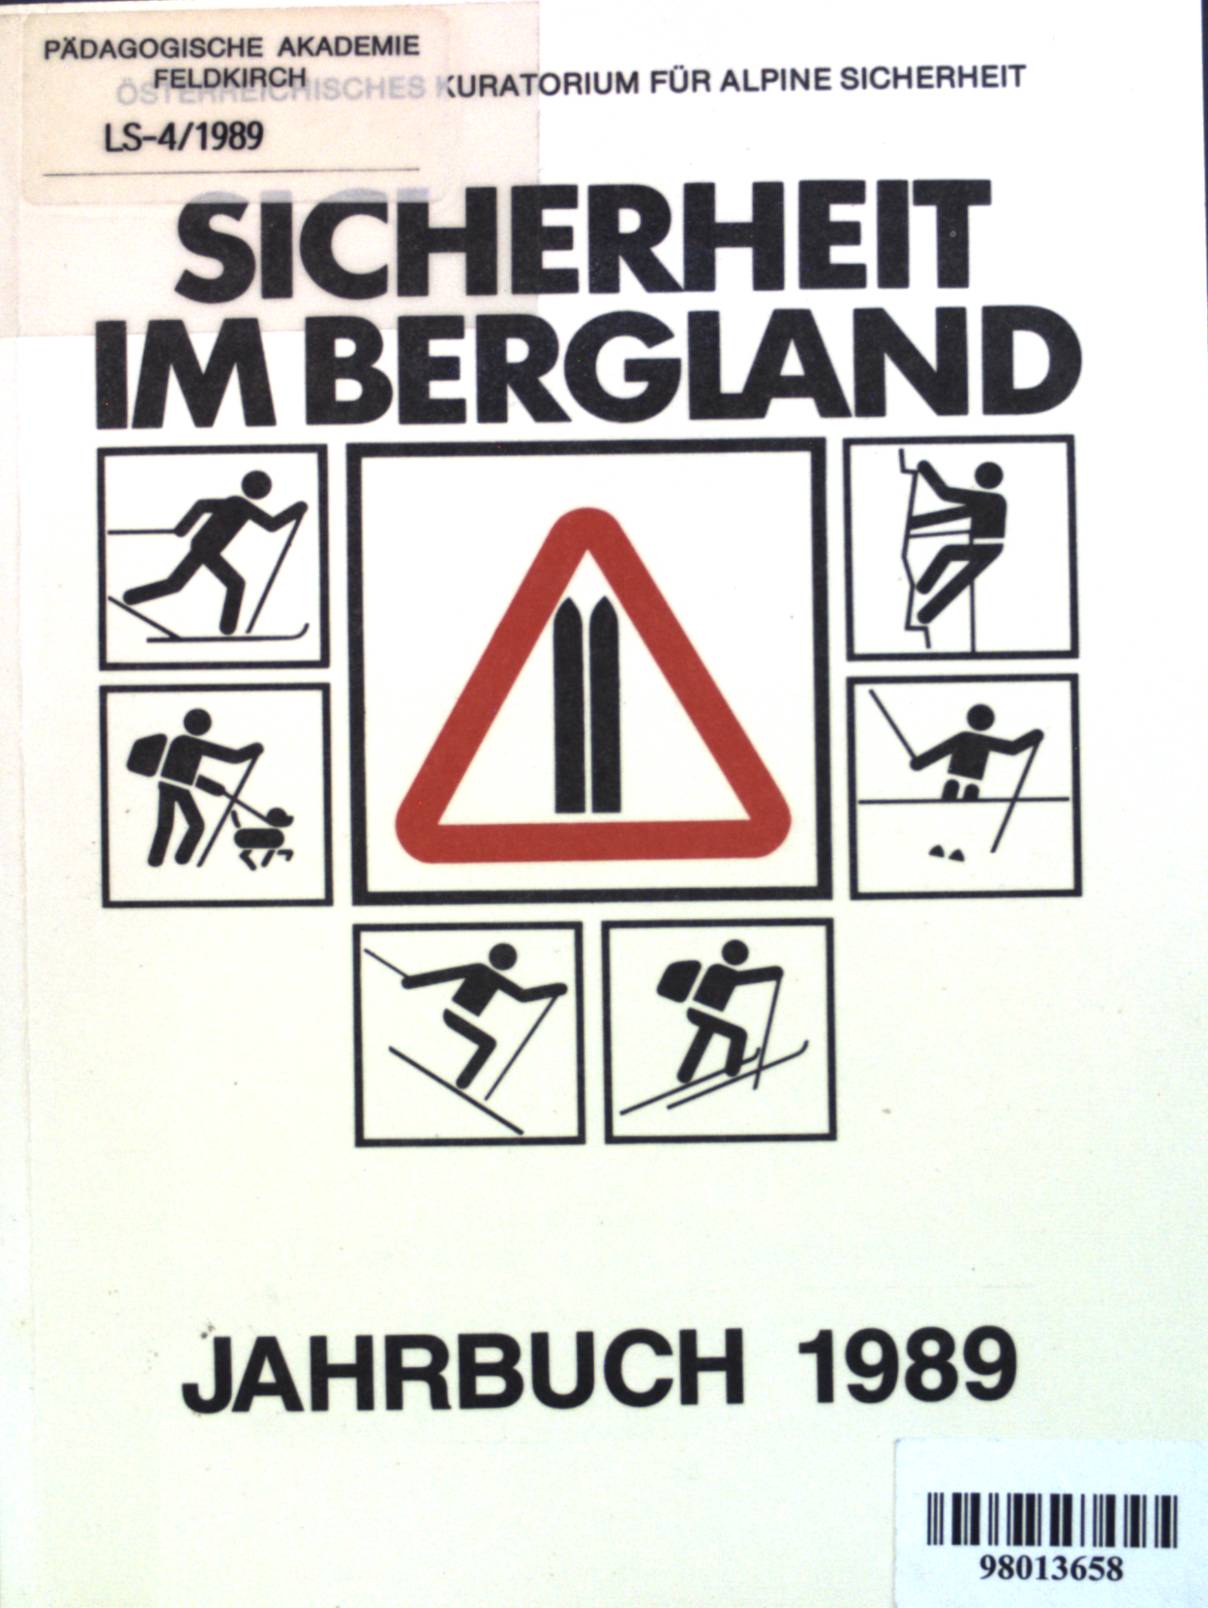 Perspektiven der alpinen Unfallvorbeugung. - in: Sicherheit im Bergland, Jahrbuch 1989.